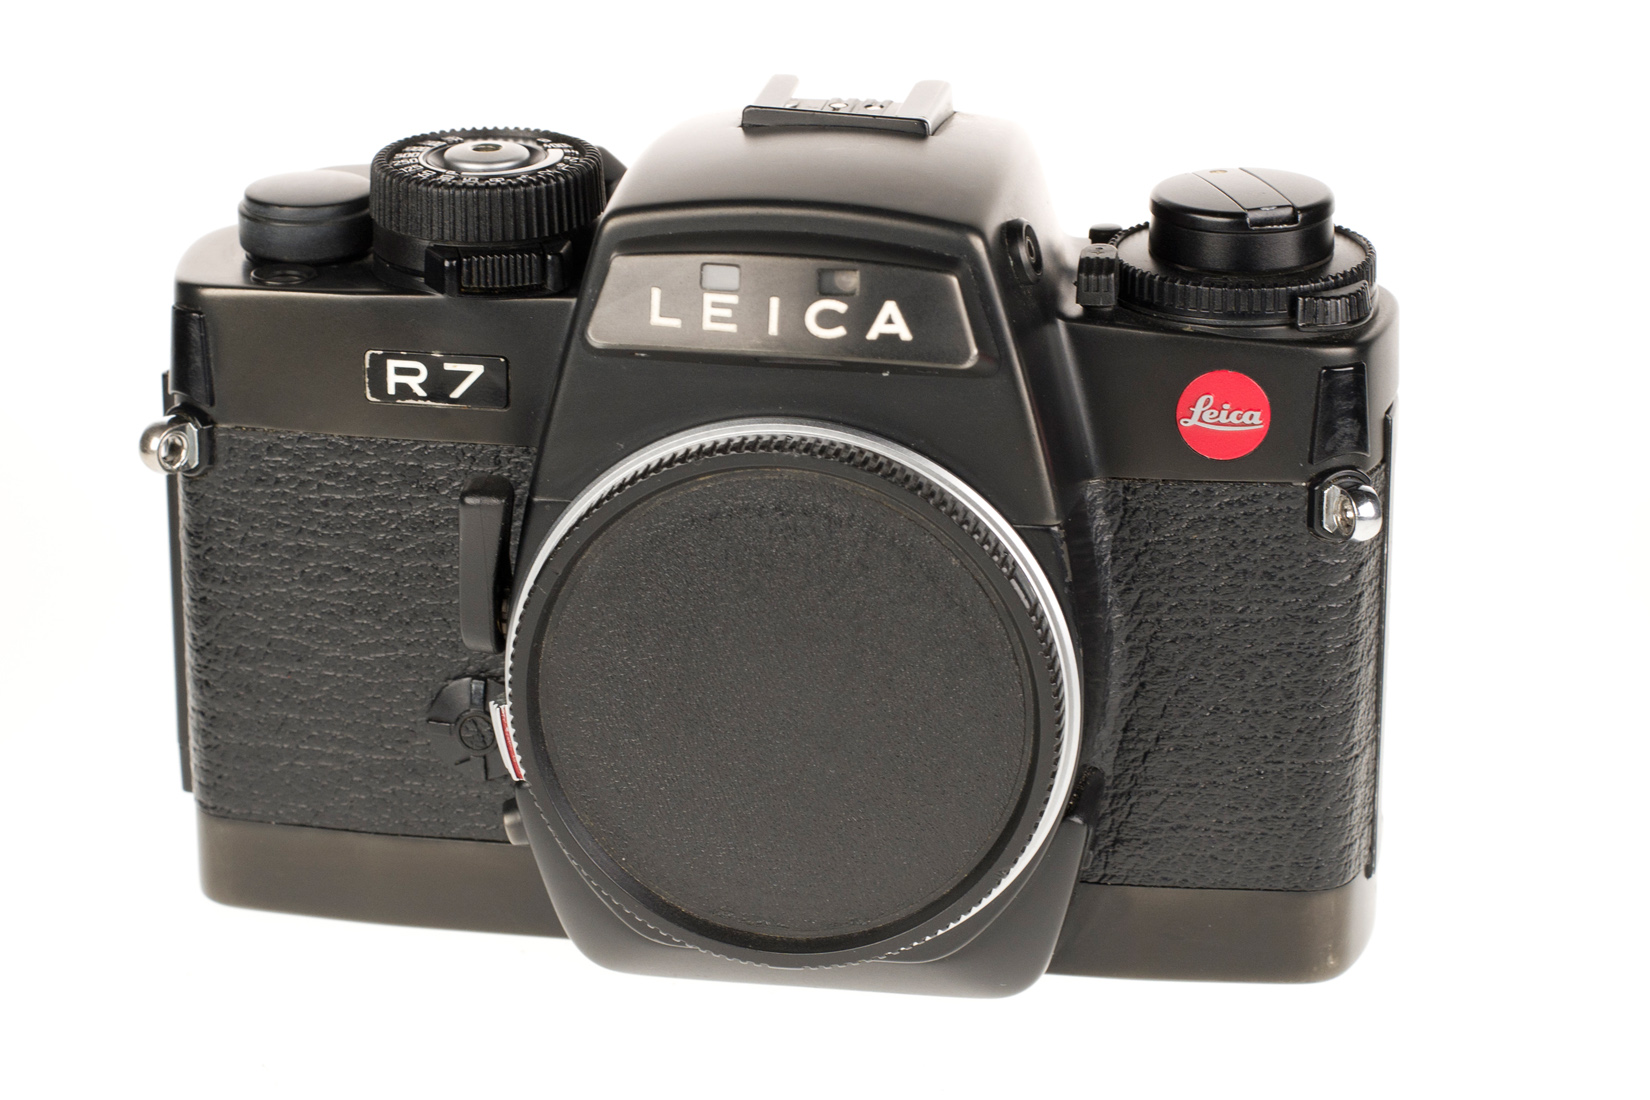 Leica R7, black